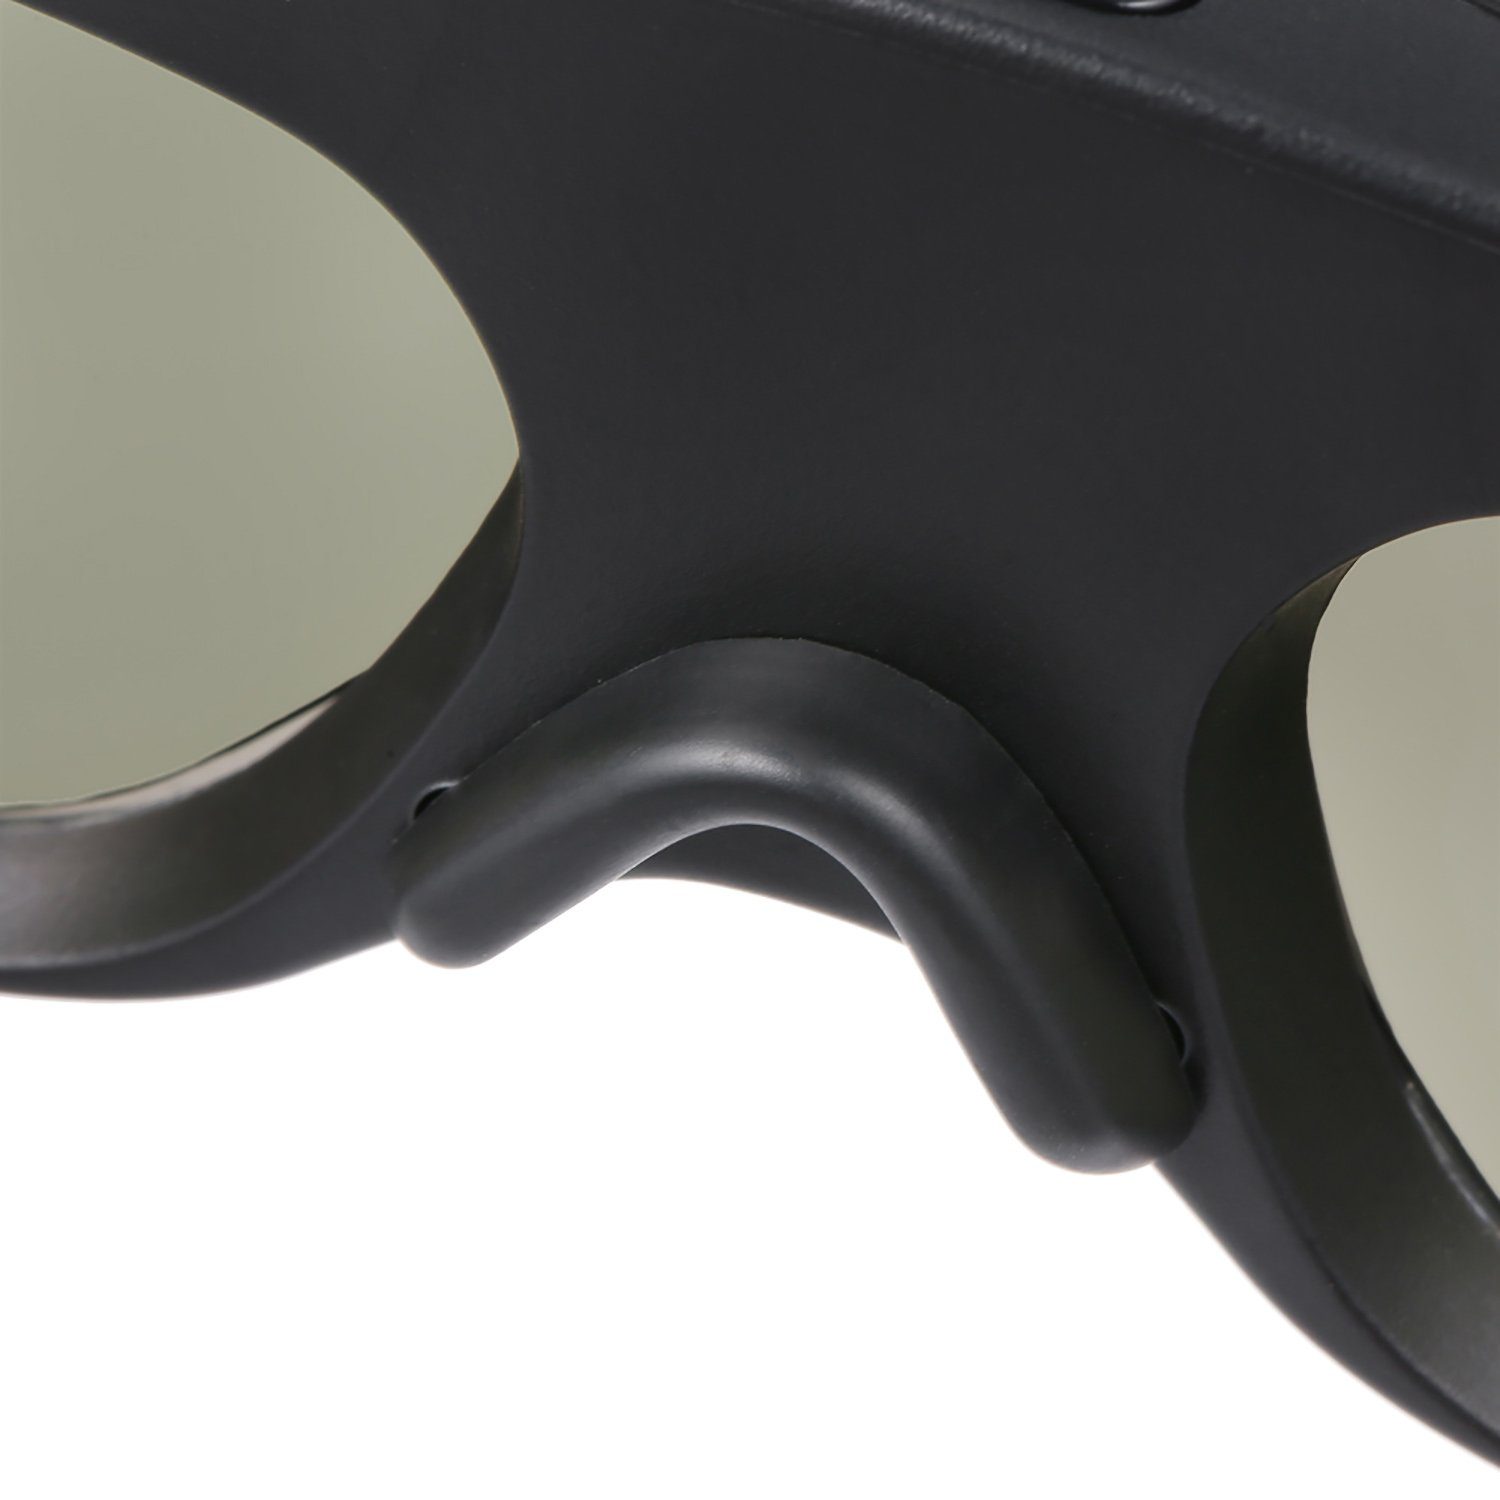 TPFNet 3D-Brille Aktive Shutterbrille kompatibel 3D DLP Link Brille, wiederaufladbare Beamer, - DLP - Stück Schwarz mit 3D 5